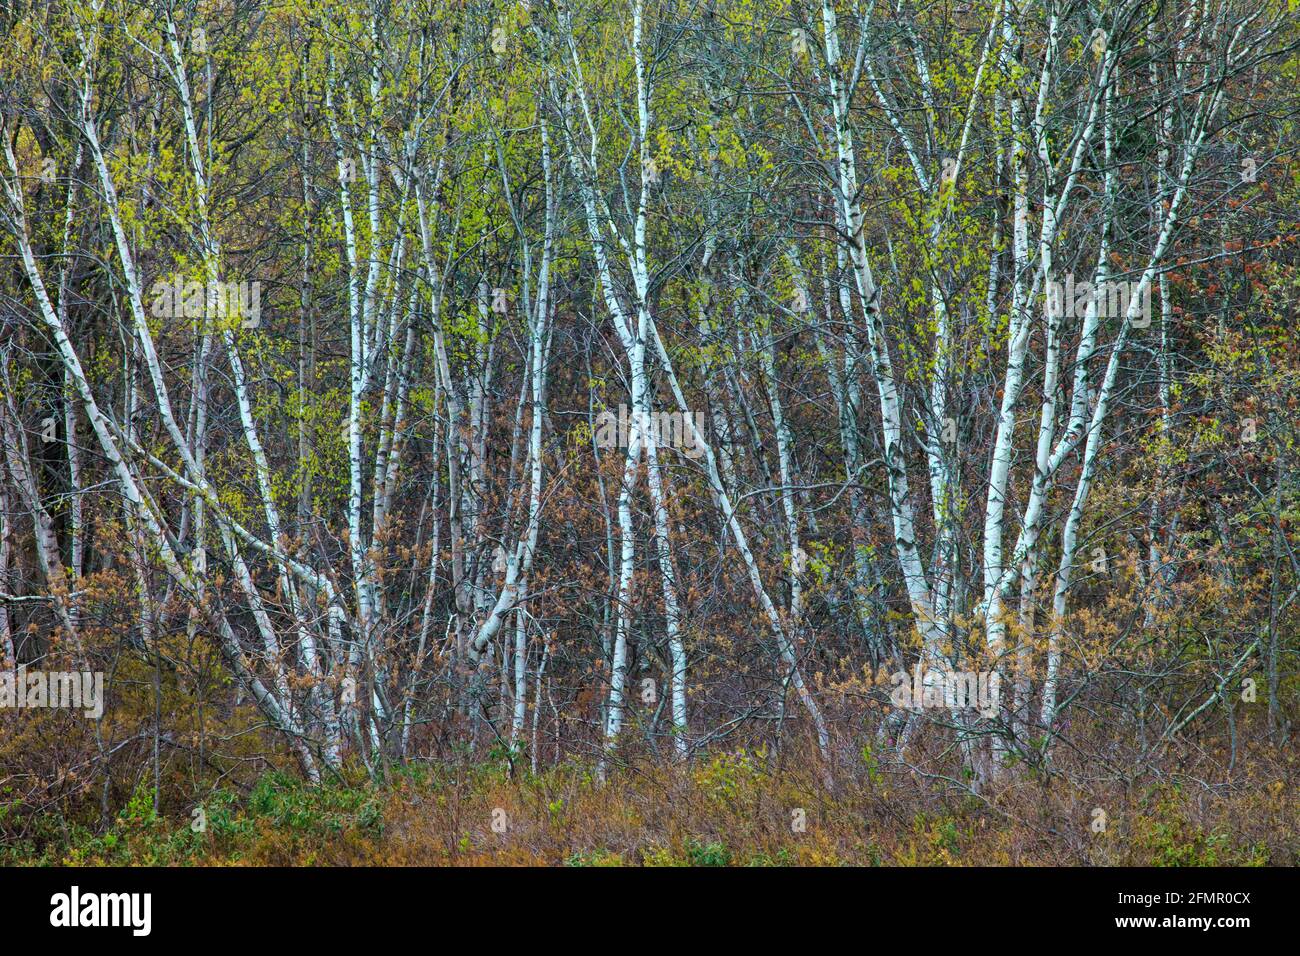 Die Graubirke ist eine kurzlebige Pionierbaumarte, die am Waldrand und auf offenen Flächen gefunden wird, die zurück in den Wald zurückreichen. Stockfoto